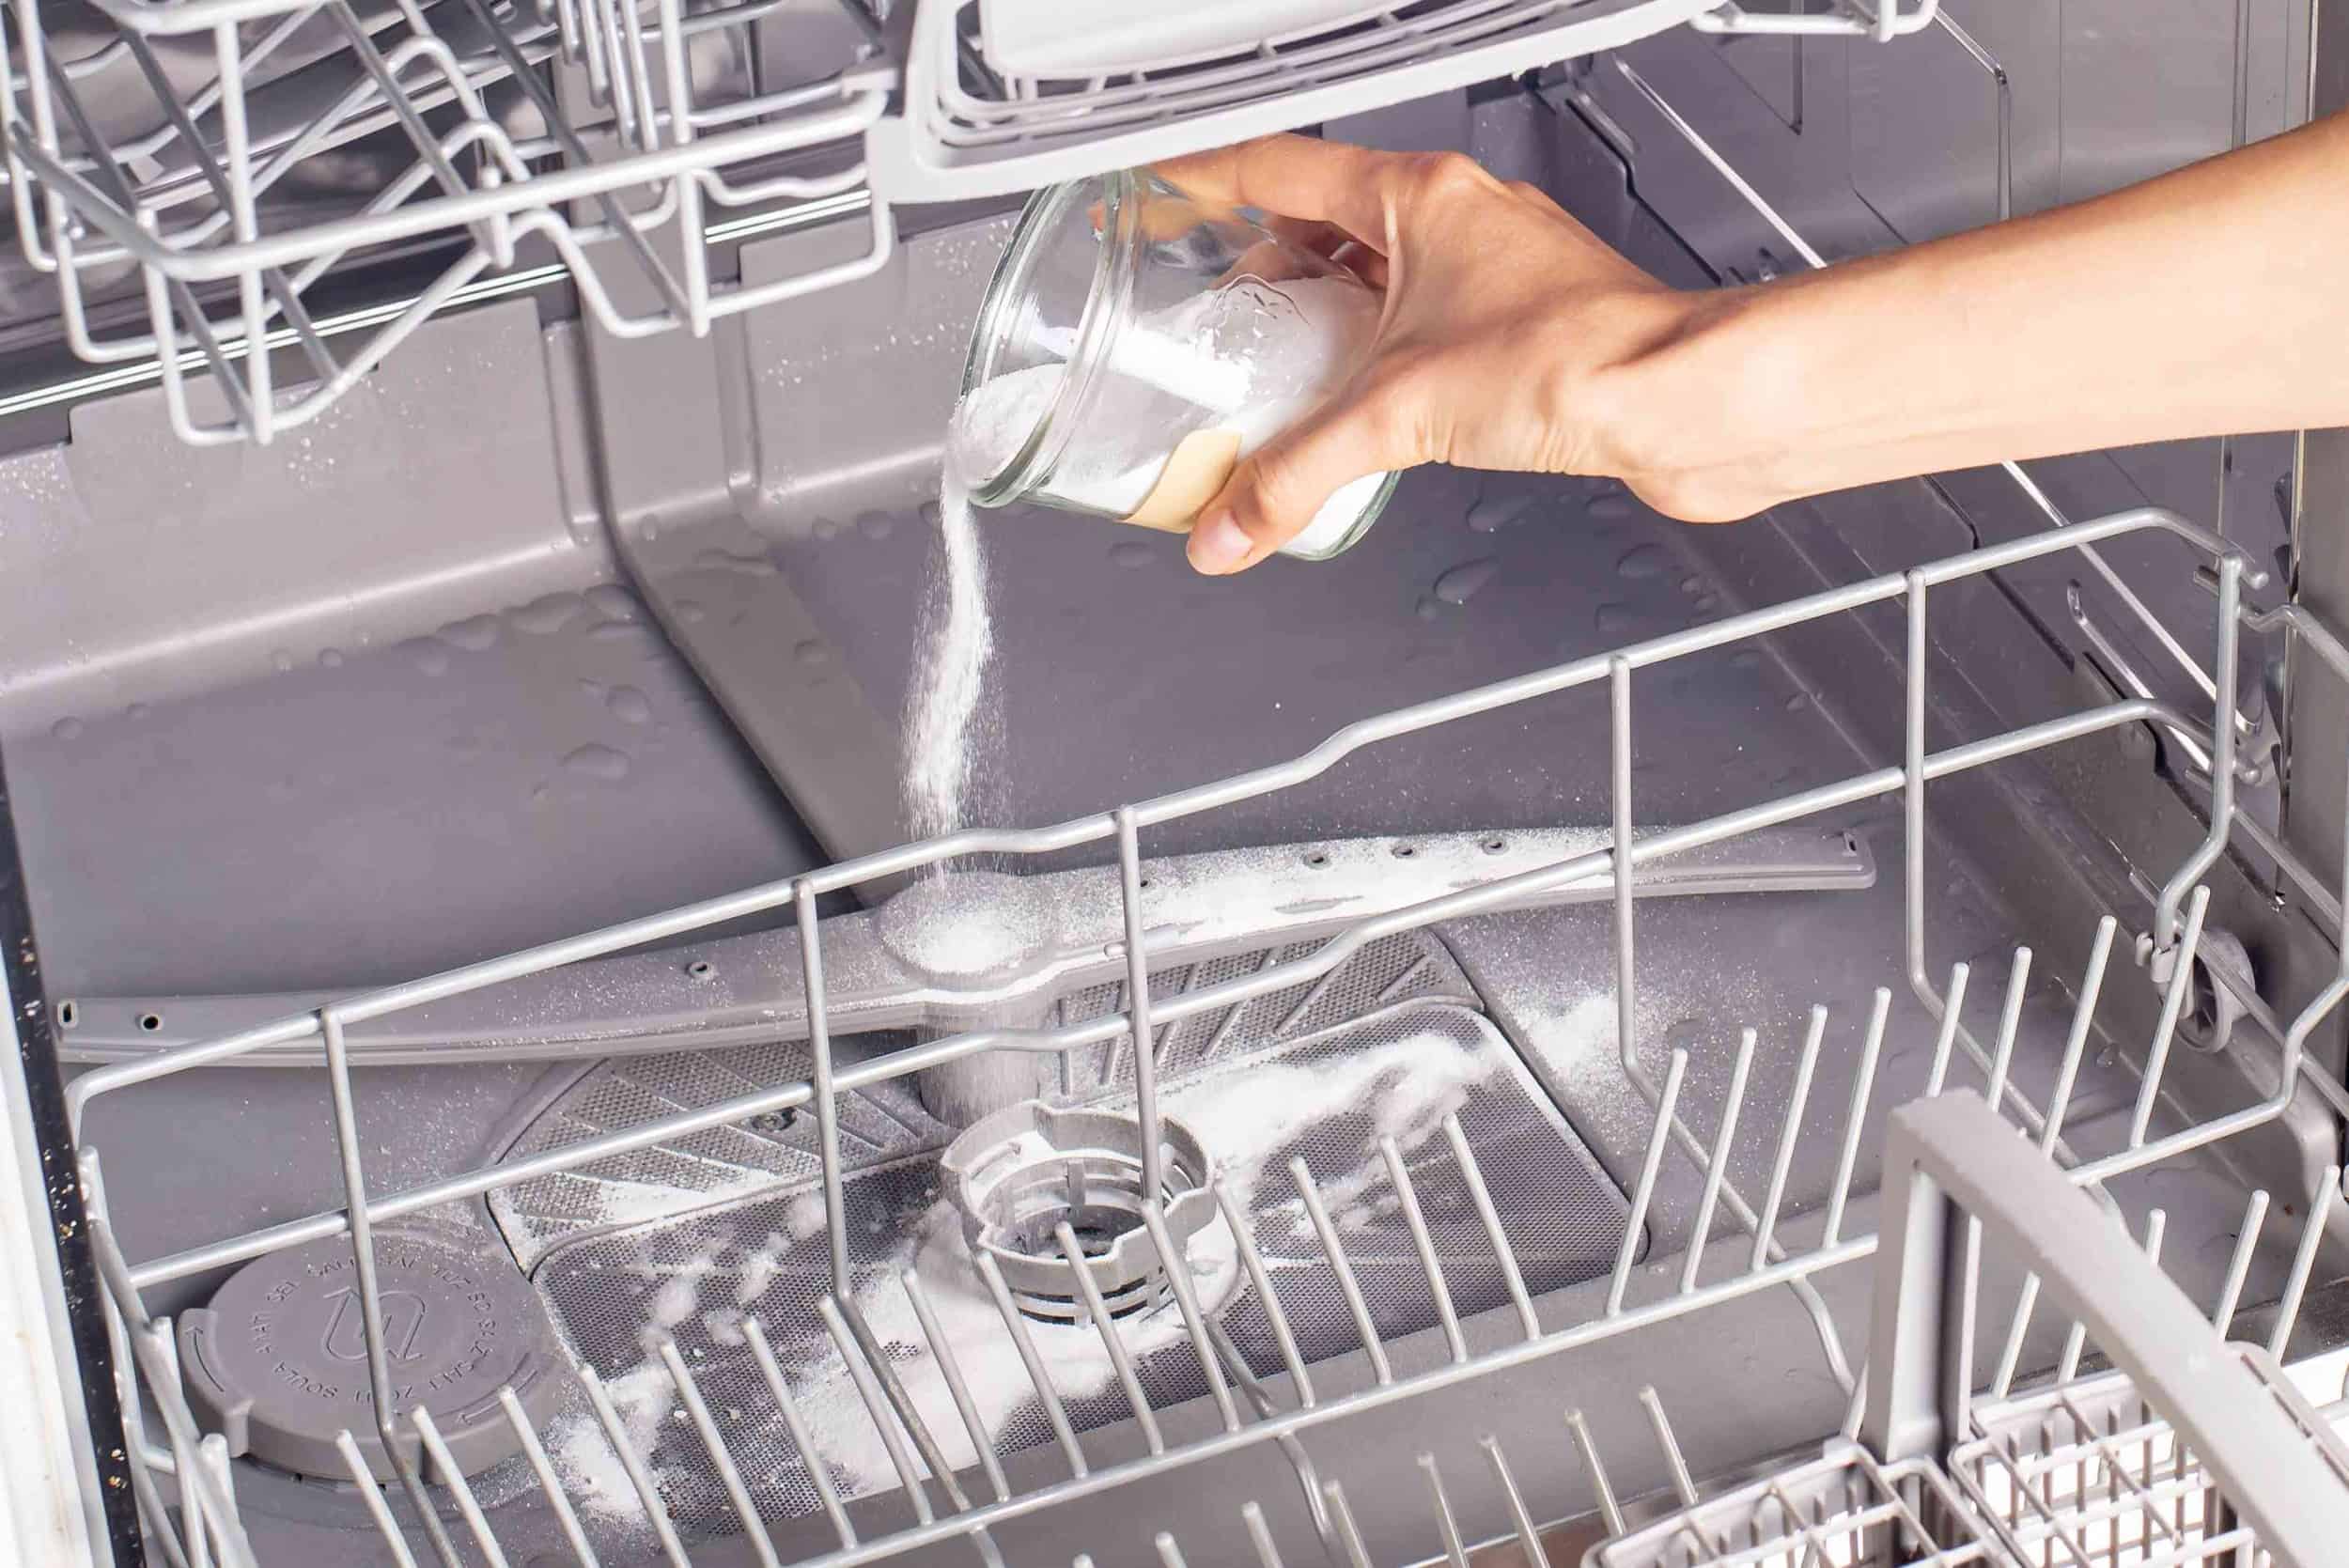 Посудомойка плохо моет посуду: причины неисправности, обзор решений